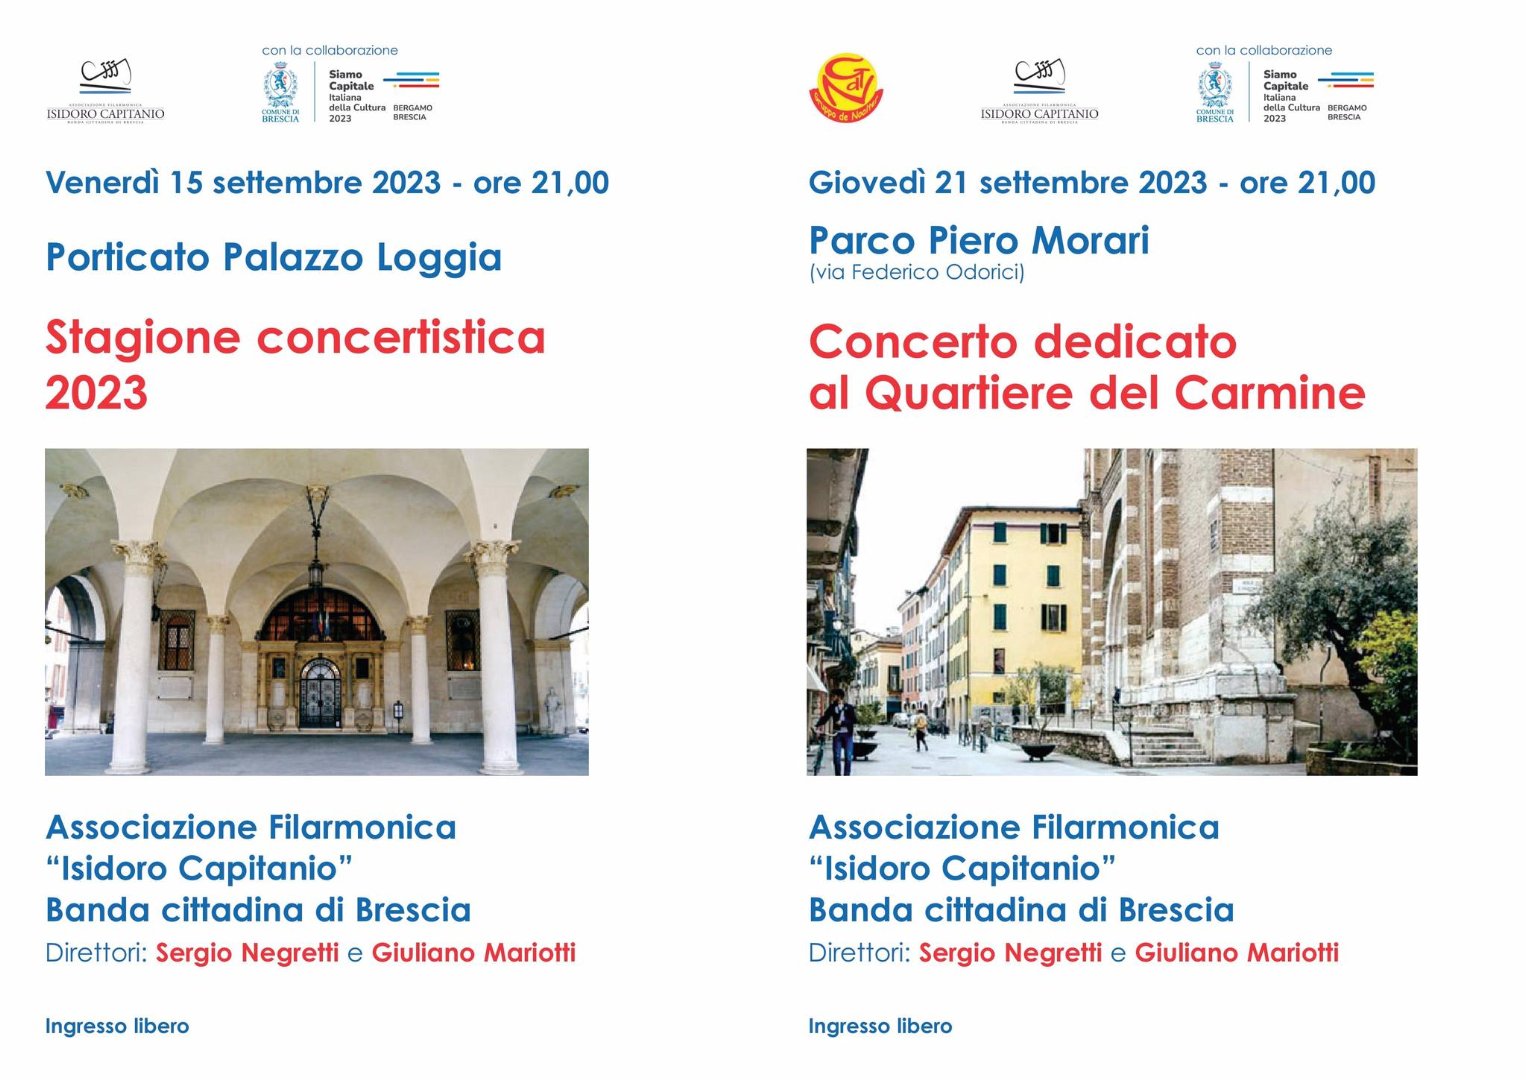 Concerto dedicato al Quartiere del Carmine | Filarmonica Isidoro Capitanio - 378718941_801060475357800_3343692151267684186_n.jpg